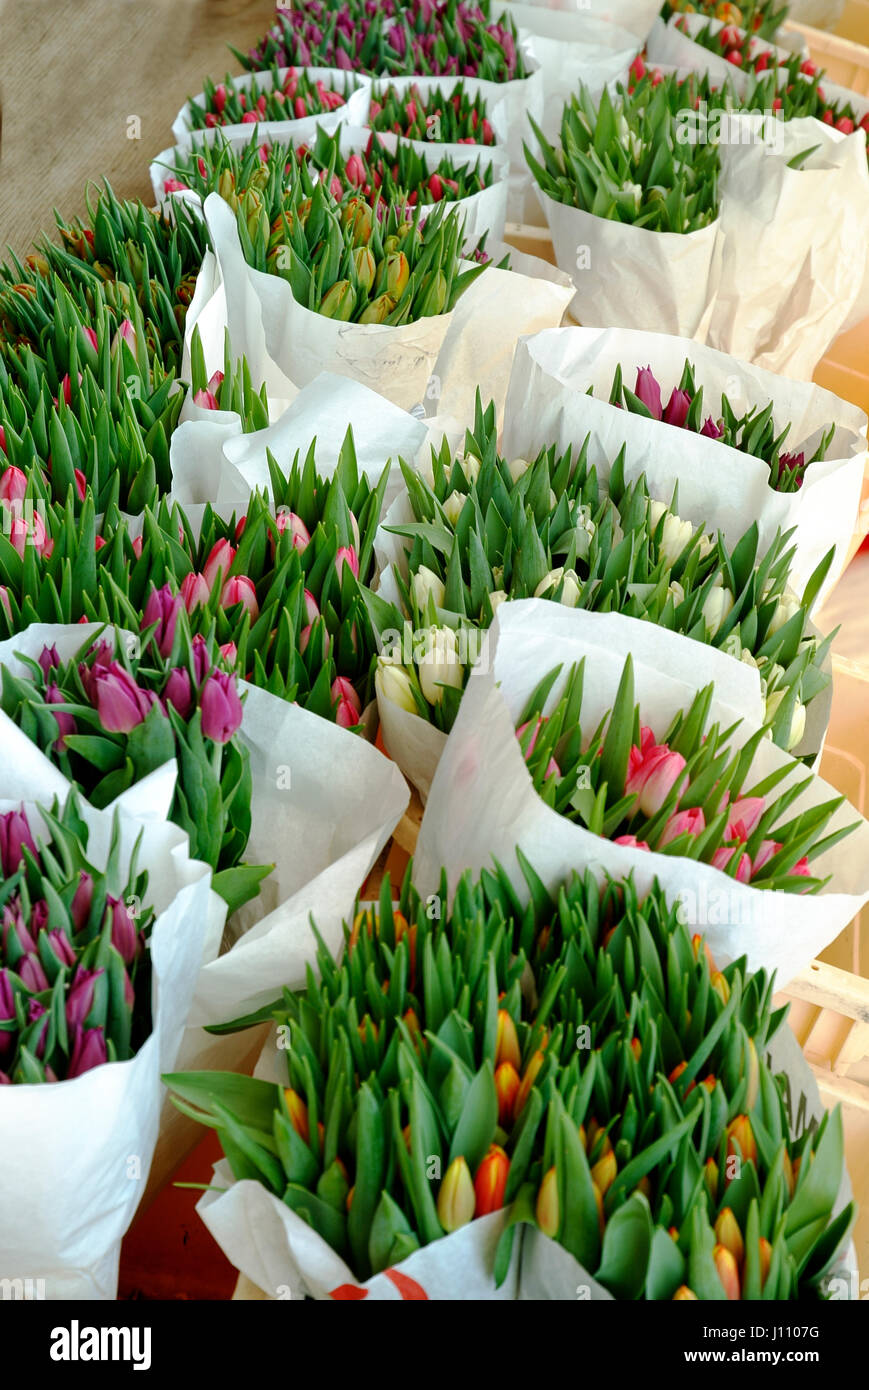 many tulips on farmers market Stock Photo